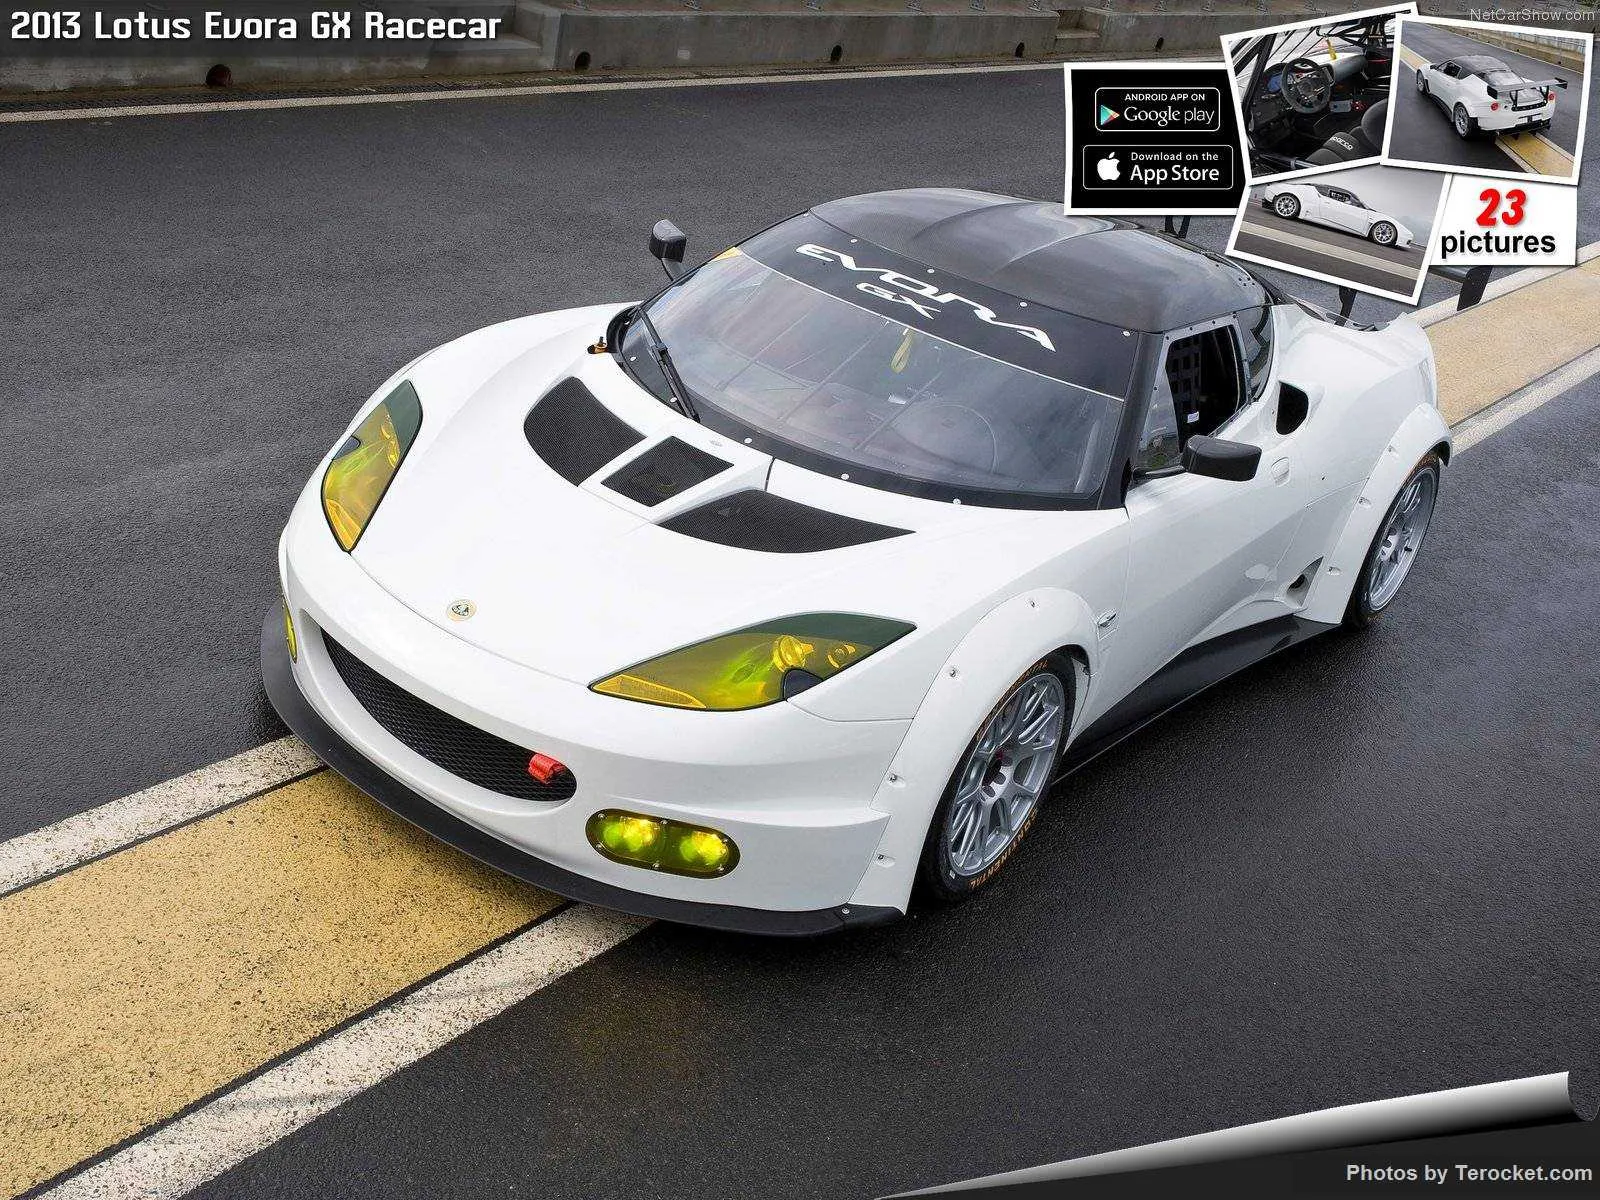 Hình ảnh siêu xe Lotus Evora GX Racecar 2013 & nội ngoại thất